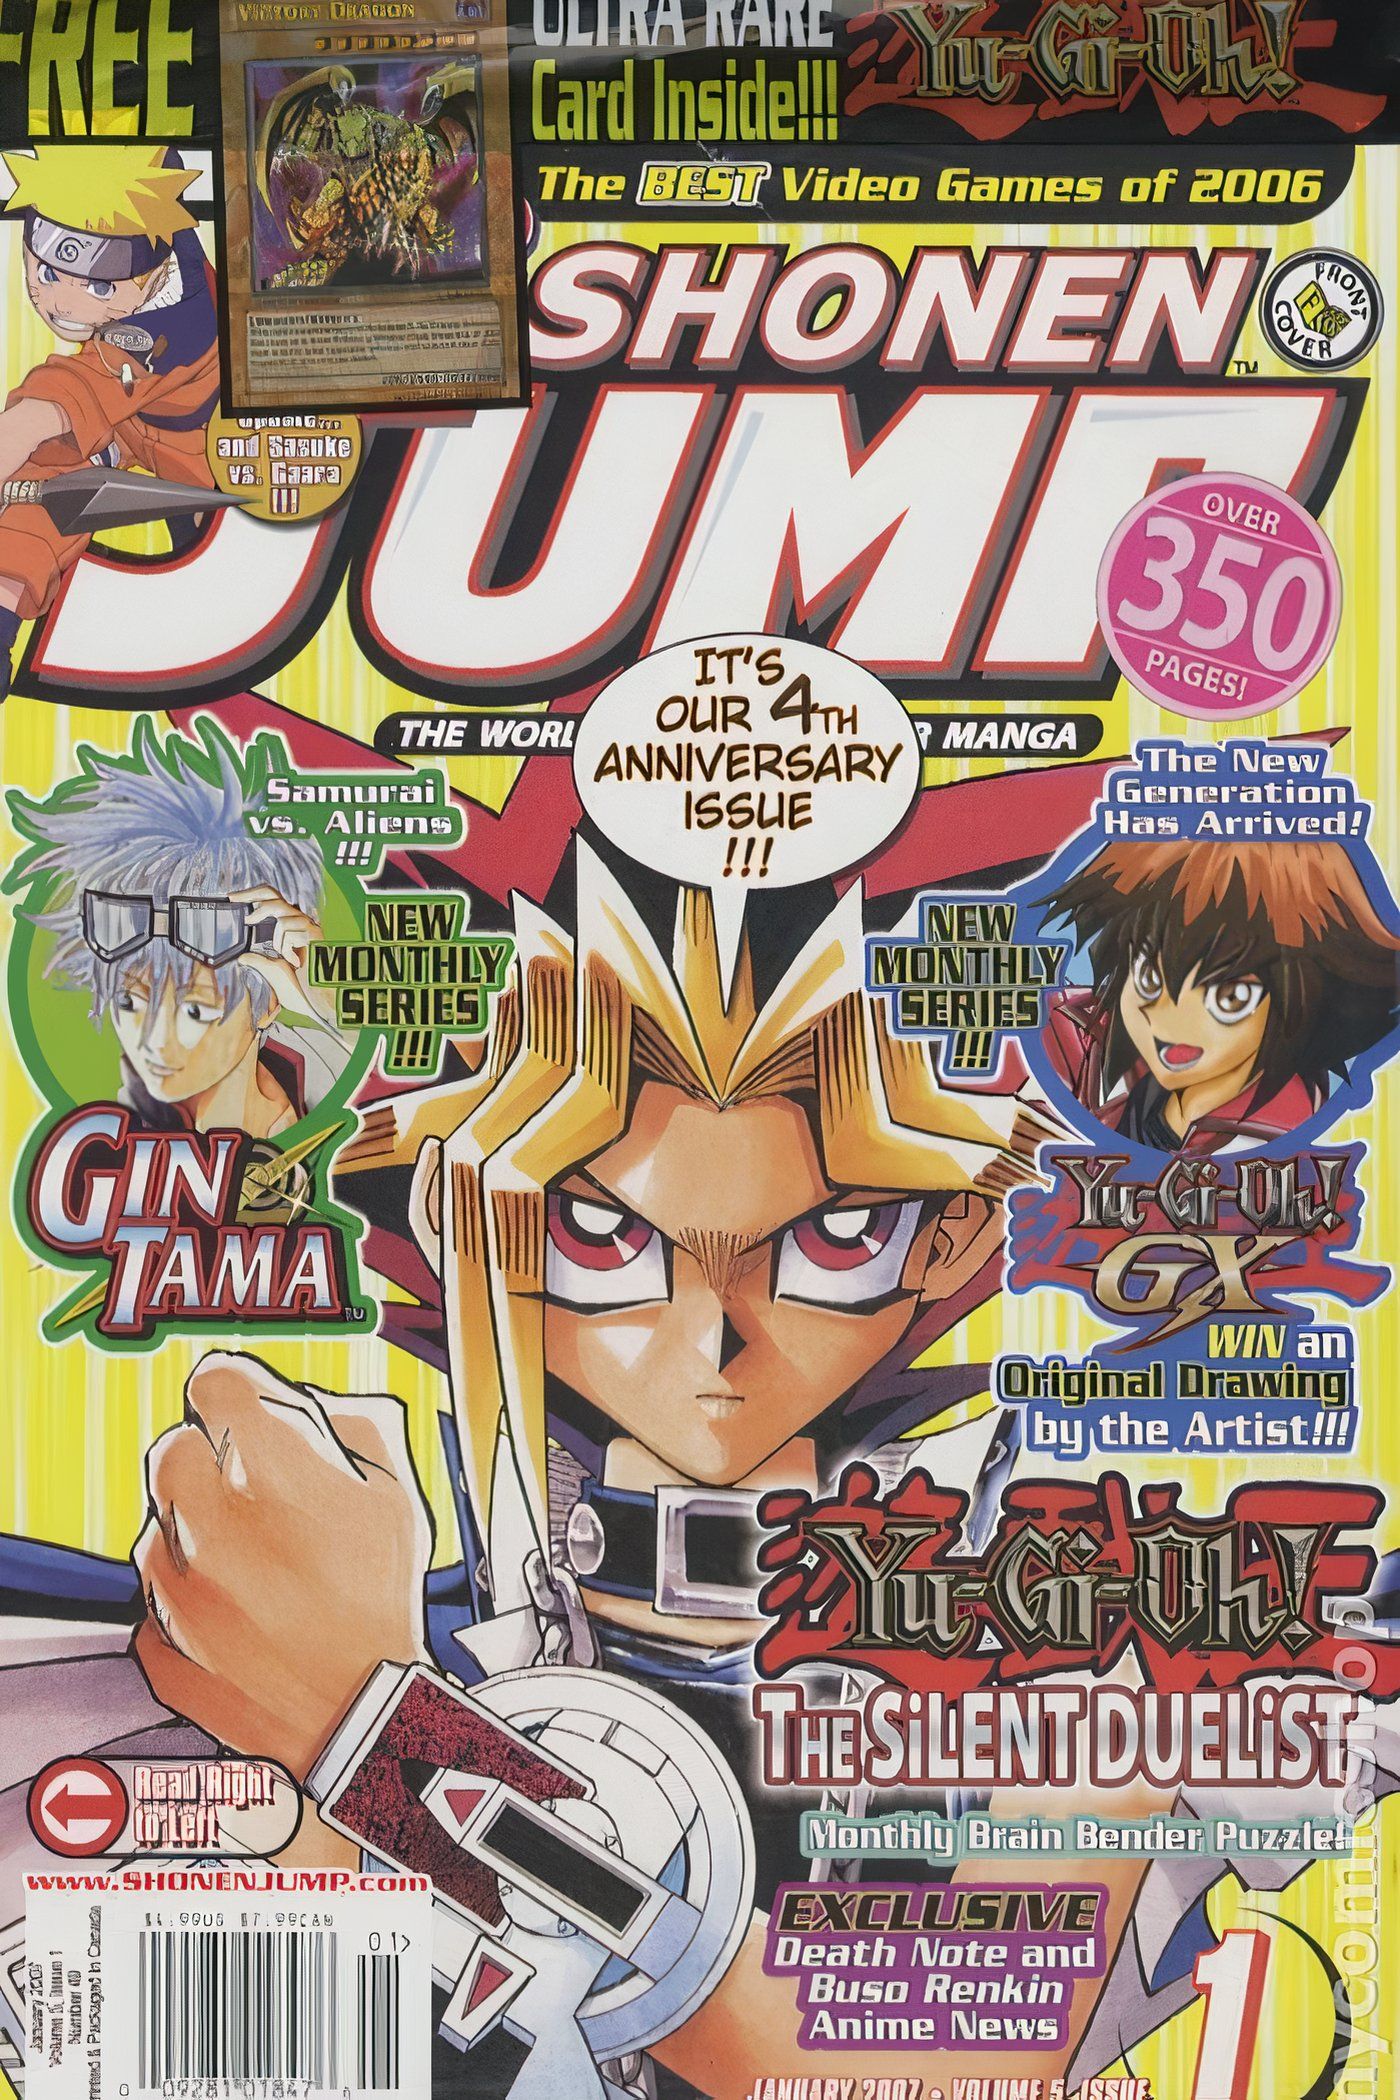 American Weekly Shonen Jump 49 com Yugi Muto de Yu-Gi-Oh!